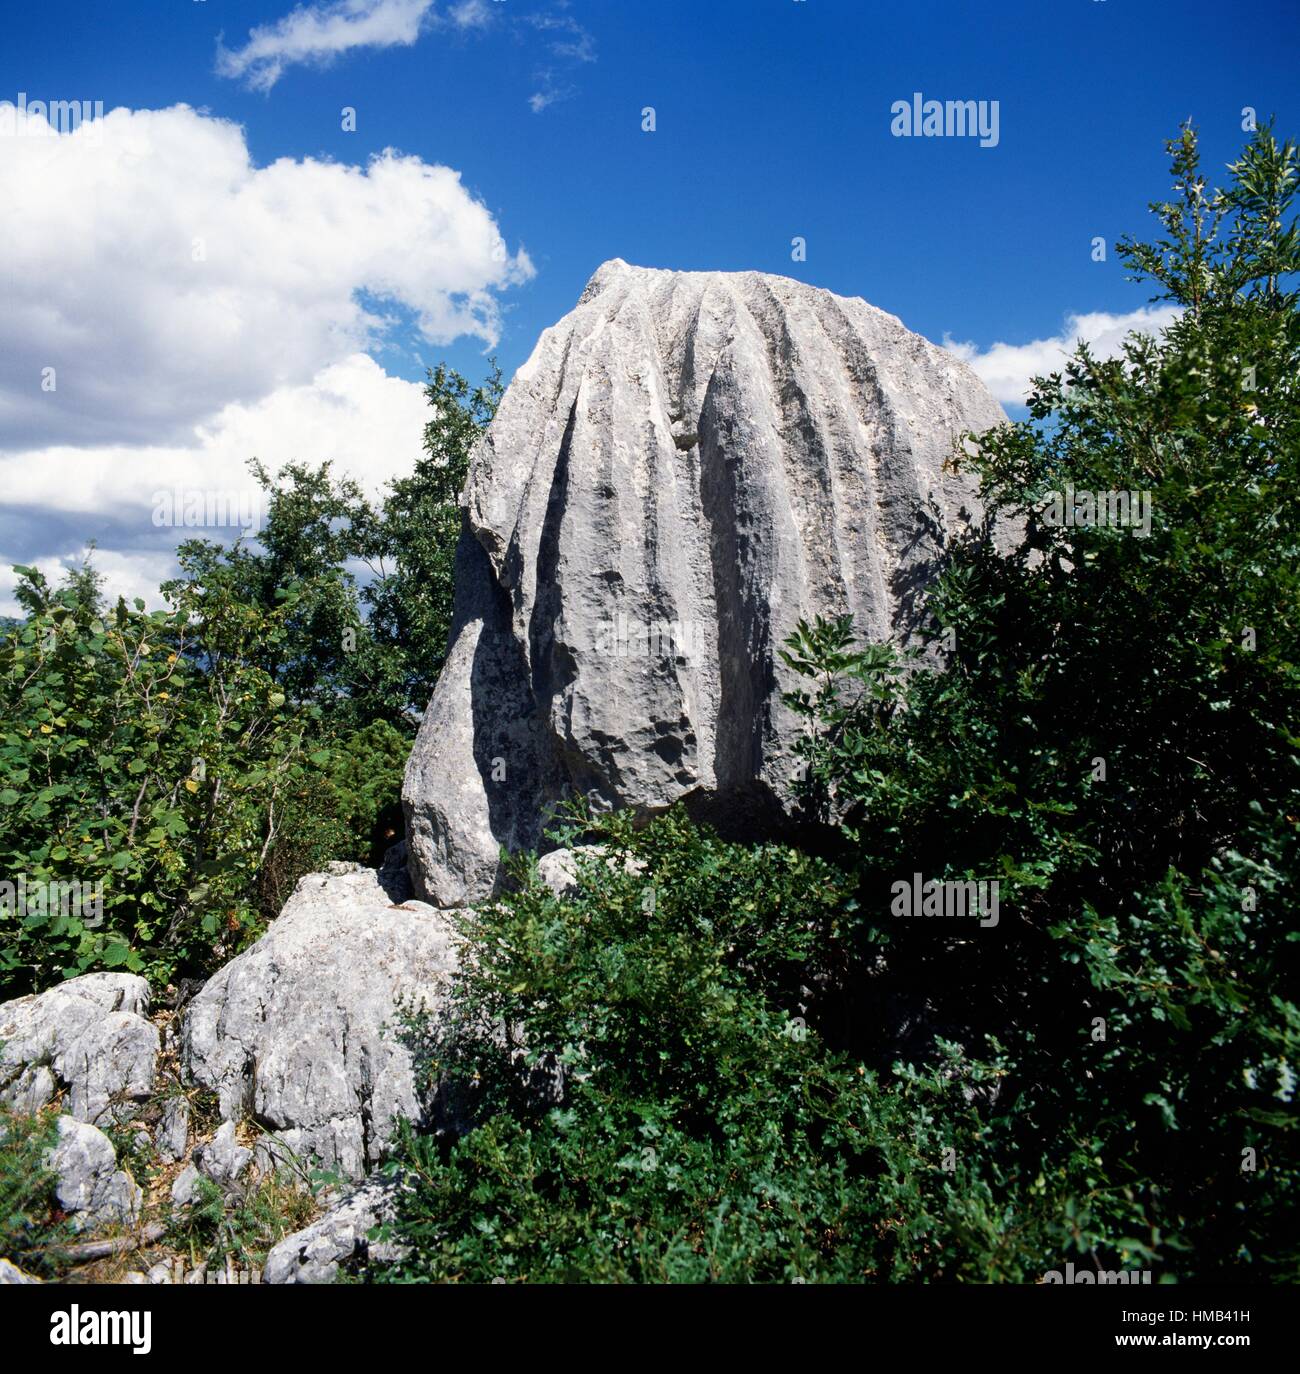 Eroded rock near Rocca di Mezzo, Abruzzo, Italy. Stock Photo